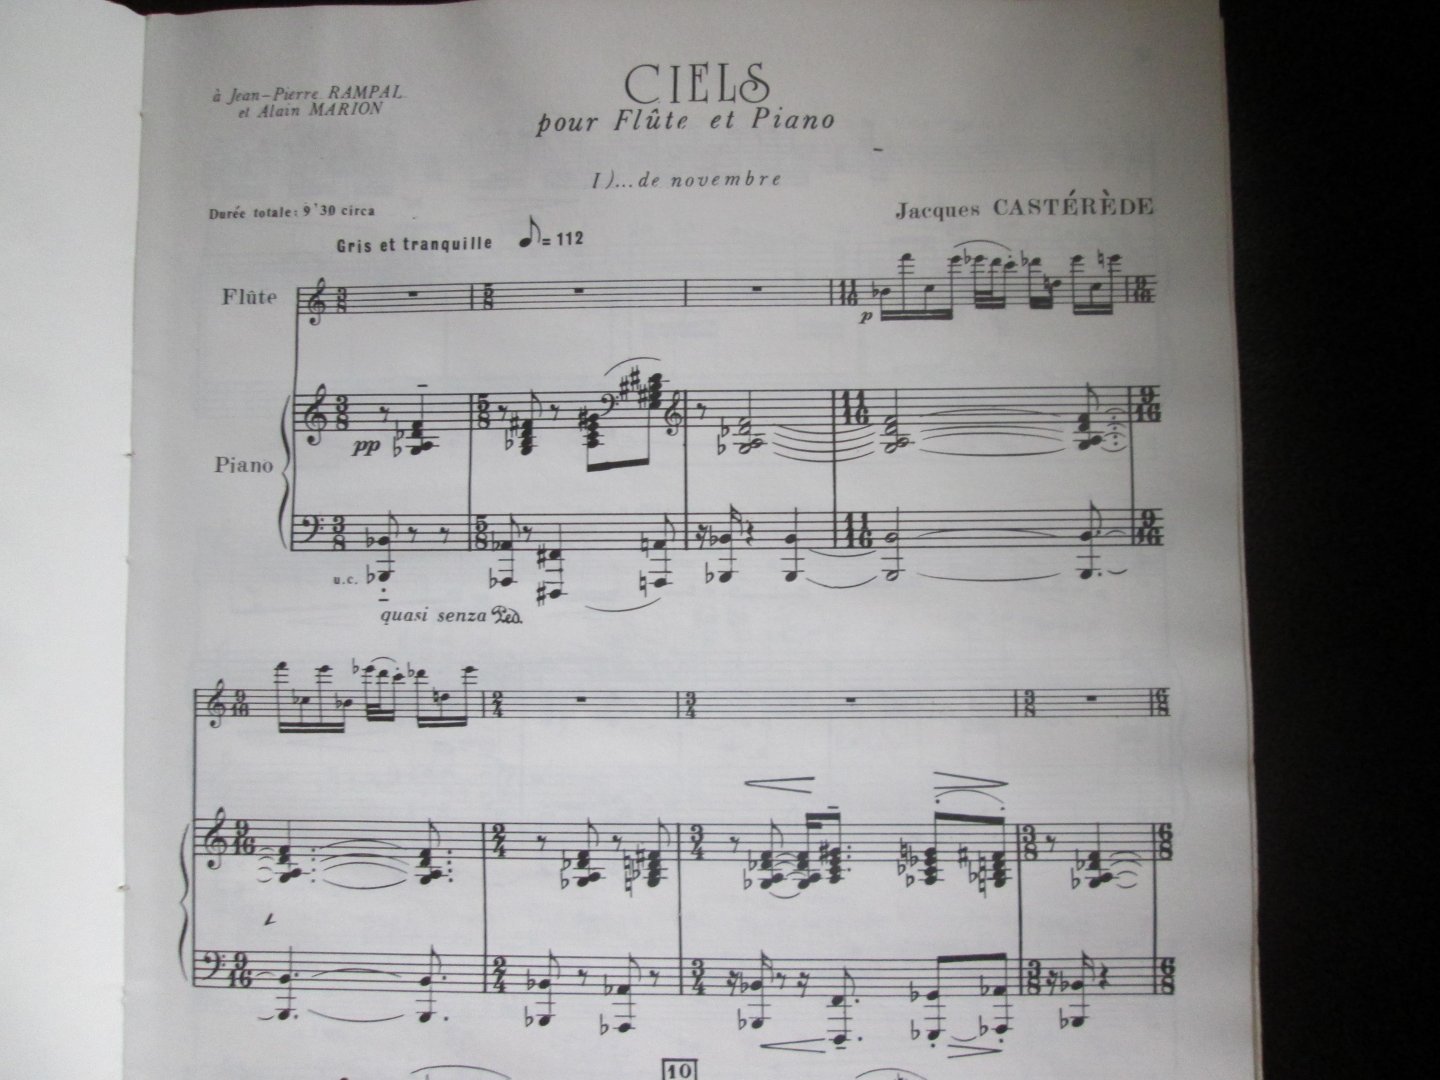 Casterede , Jacques ( 1926 - 2014 ; Frans pianist en componist ) - CIELS ... pour Flute et Piano ( I ... de Novembre / II ... de Mars )